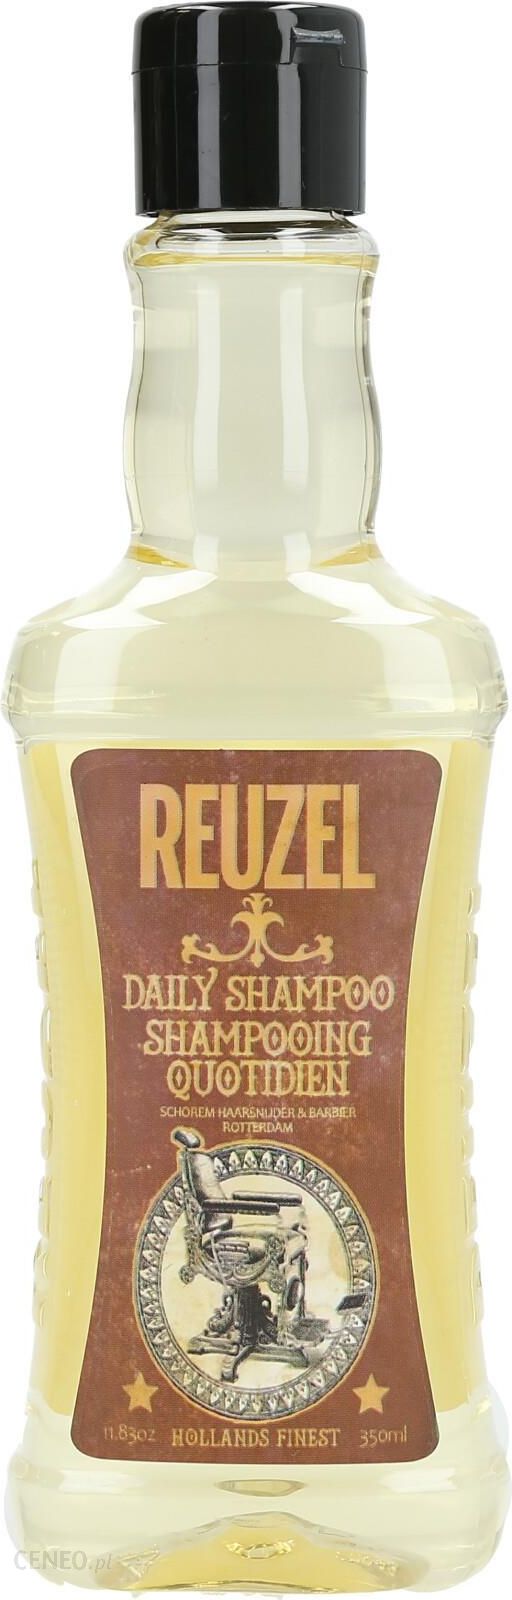 reuzel szampon skład